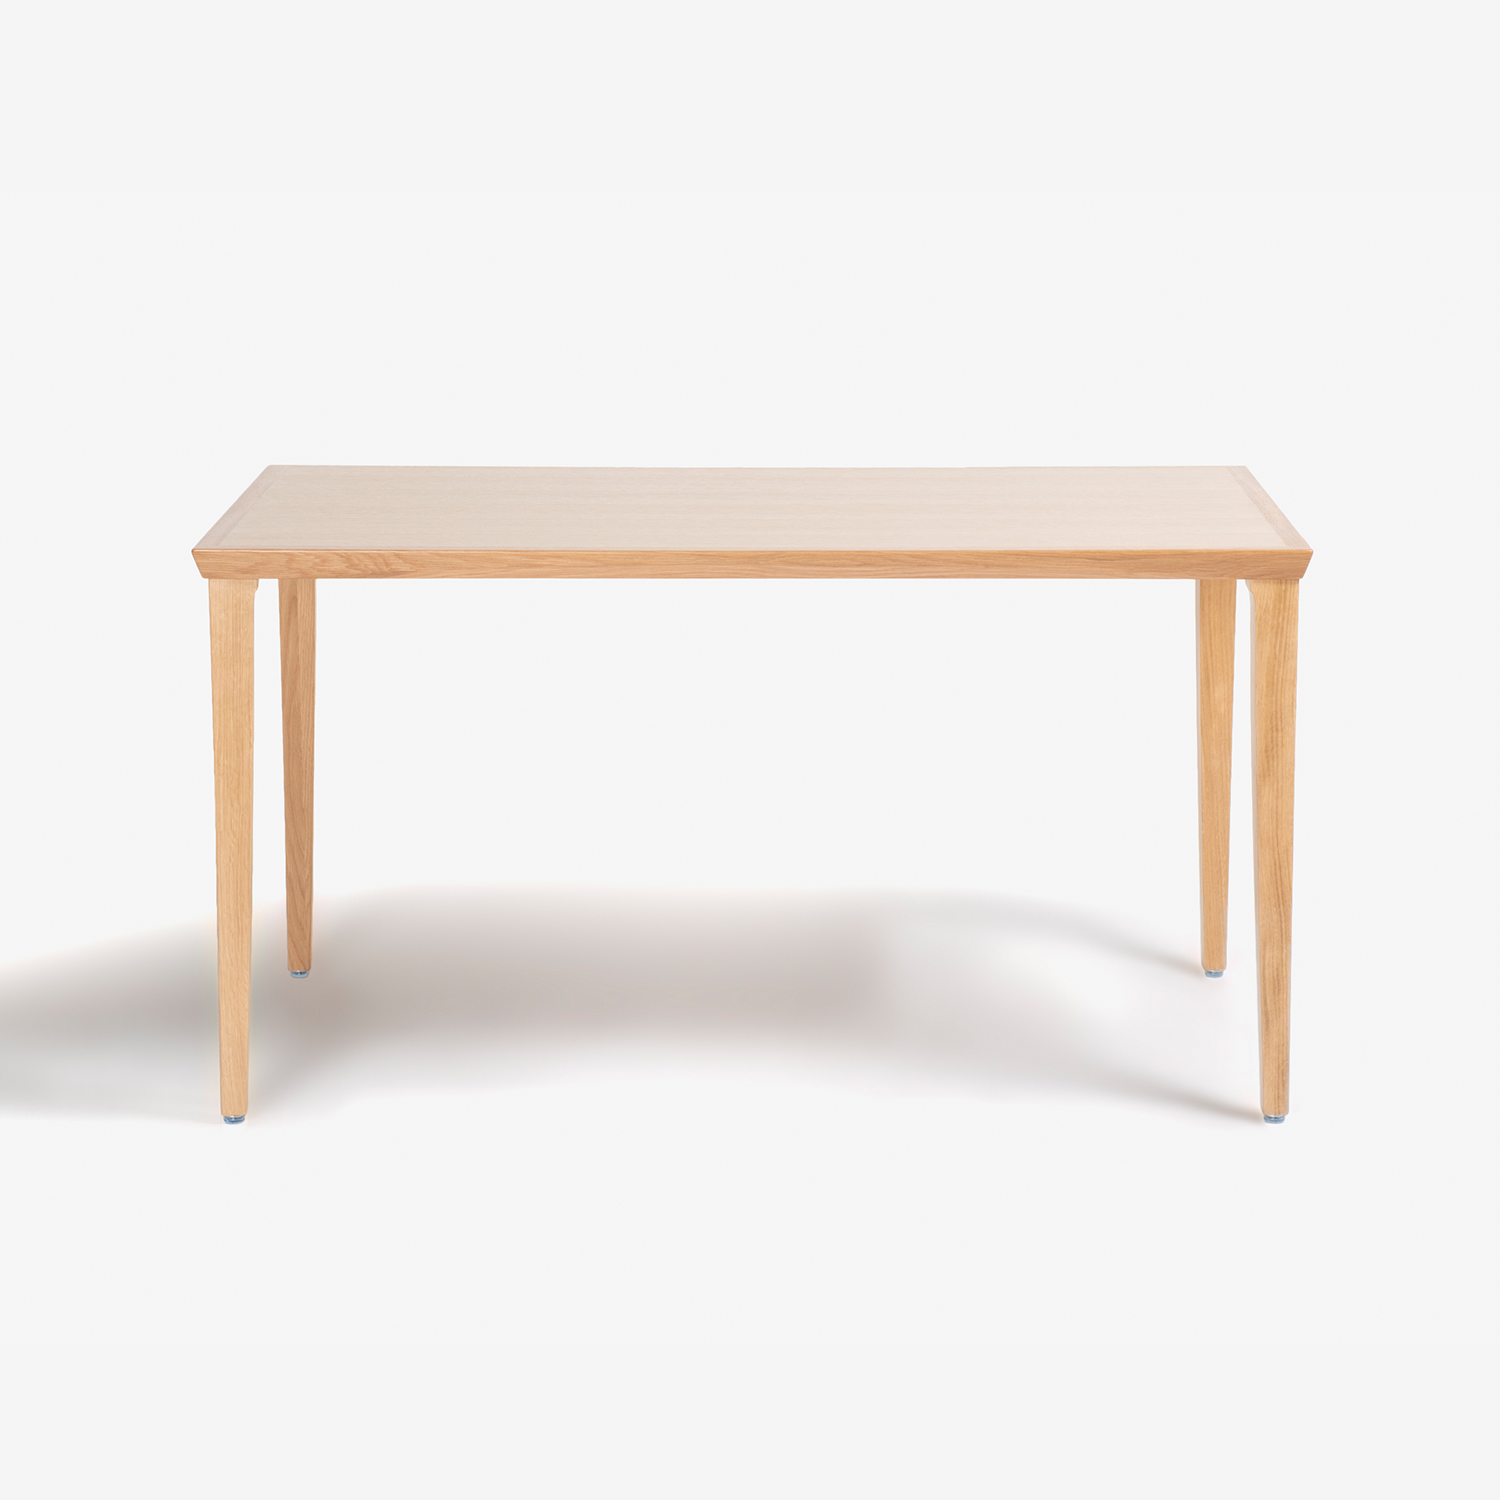 秋田木工 ダイニングテーブル「N-T005」ナラ材 ホワイトオーク色 全3サイズ